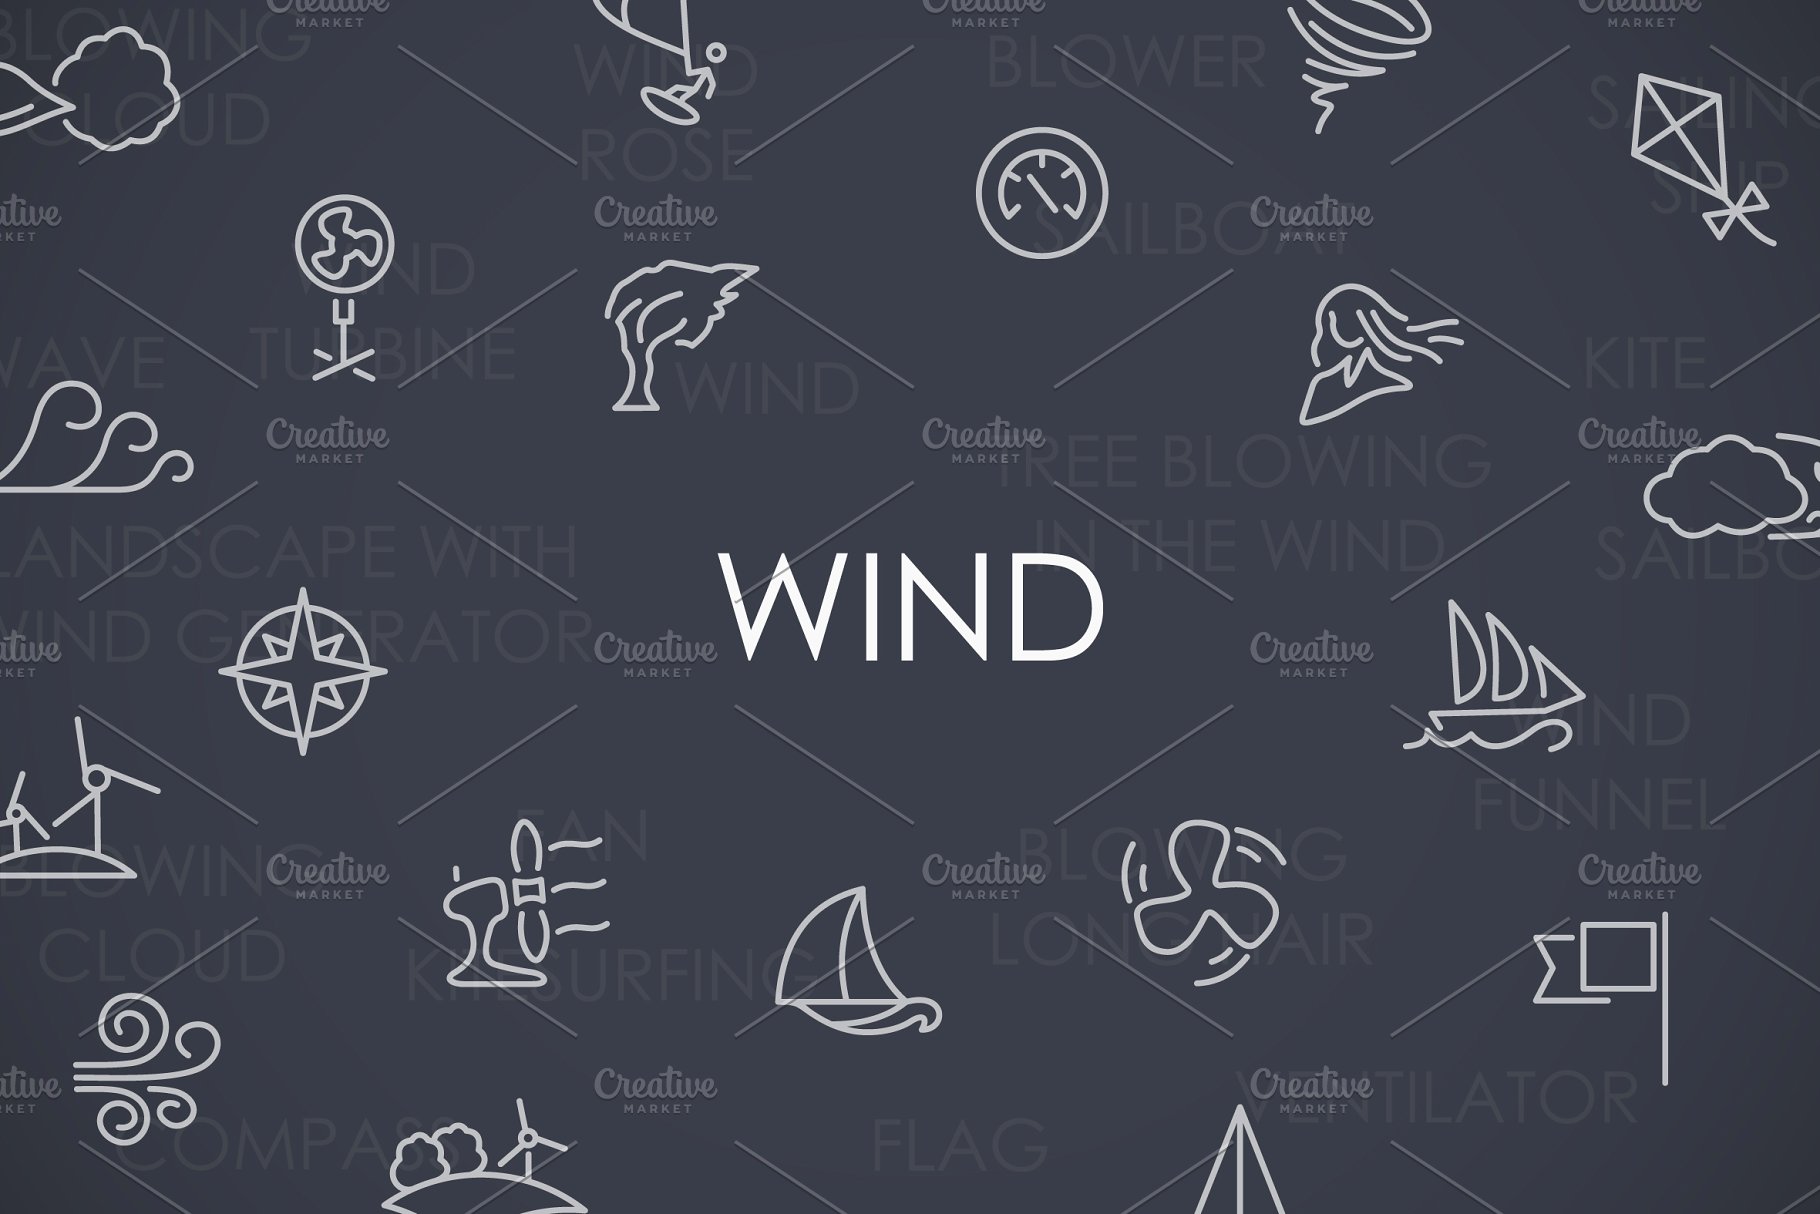 风力矢量图标素材 Wind thinline icons #